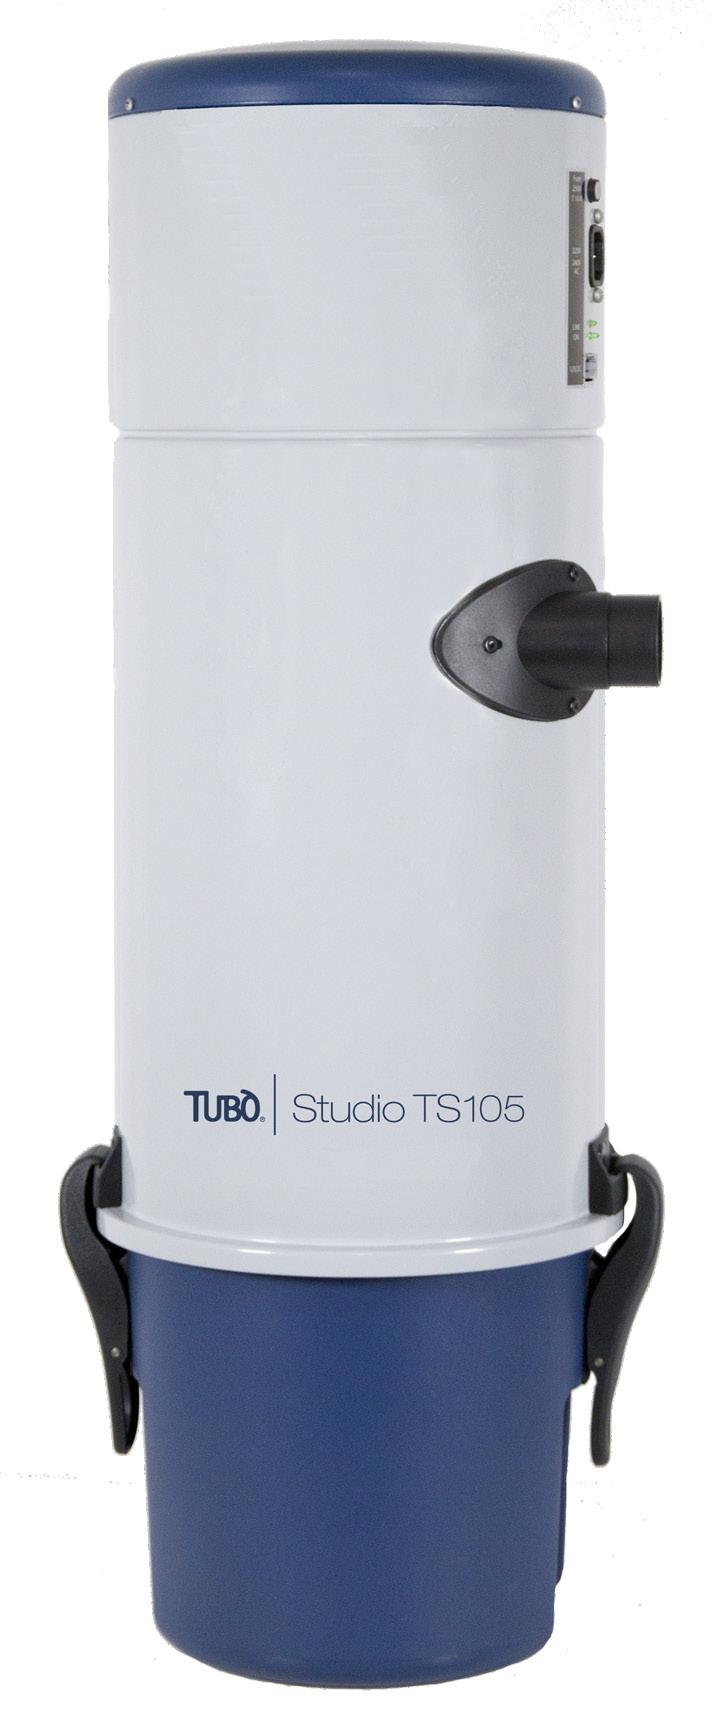 STUDIO TS105 Studio TS105 passer for små og mellomstore boliger.